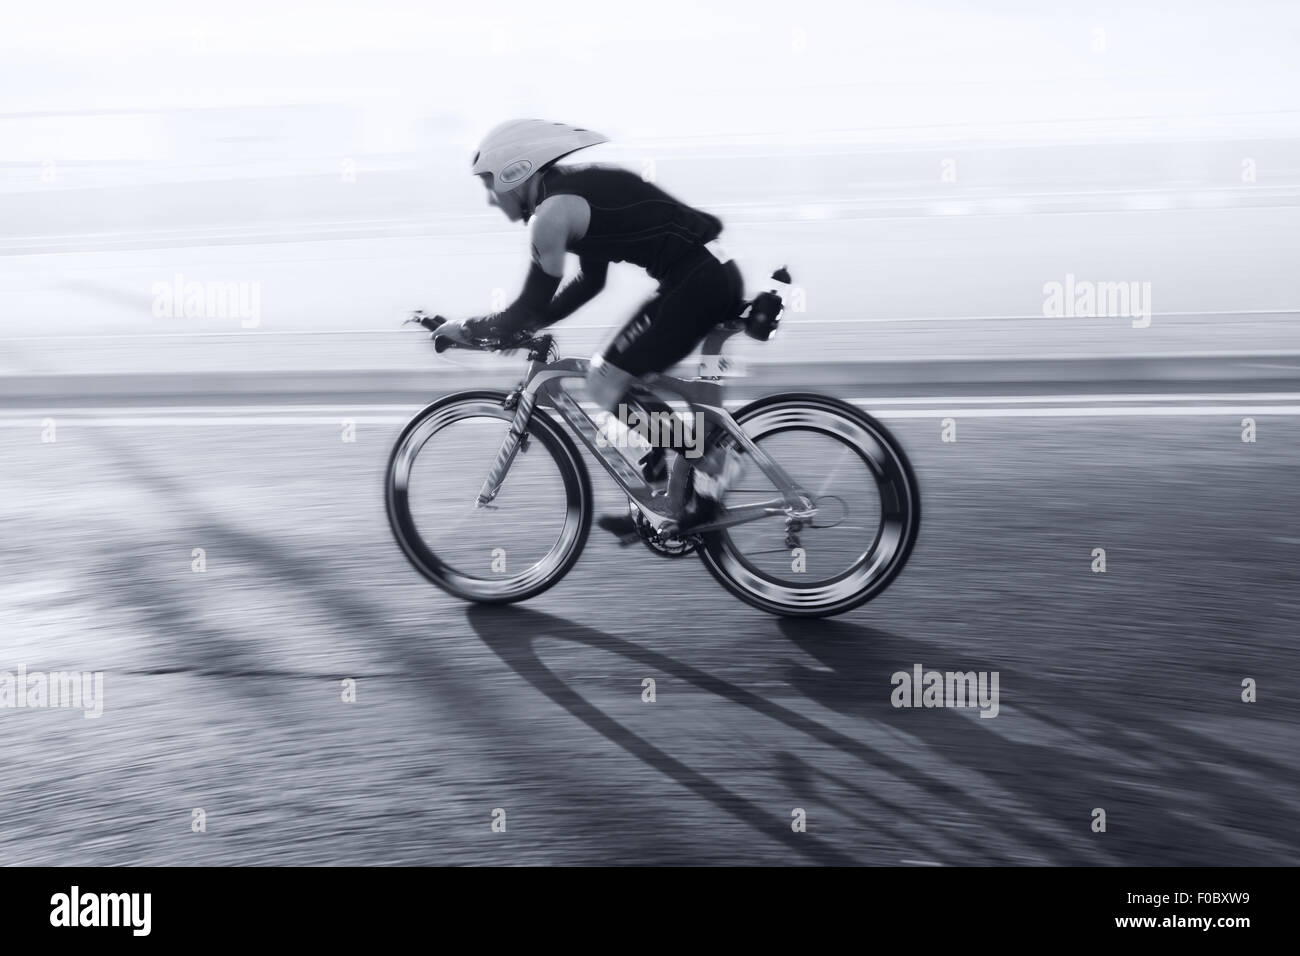 Sportif équitation vélo à journée ensoleillée sur la route côtière, blurred motion Banque D'Images